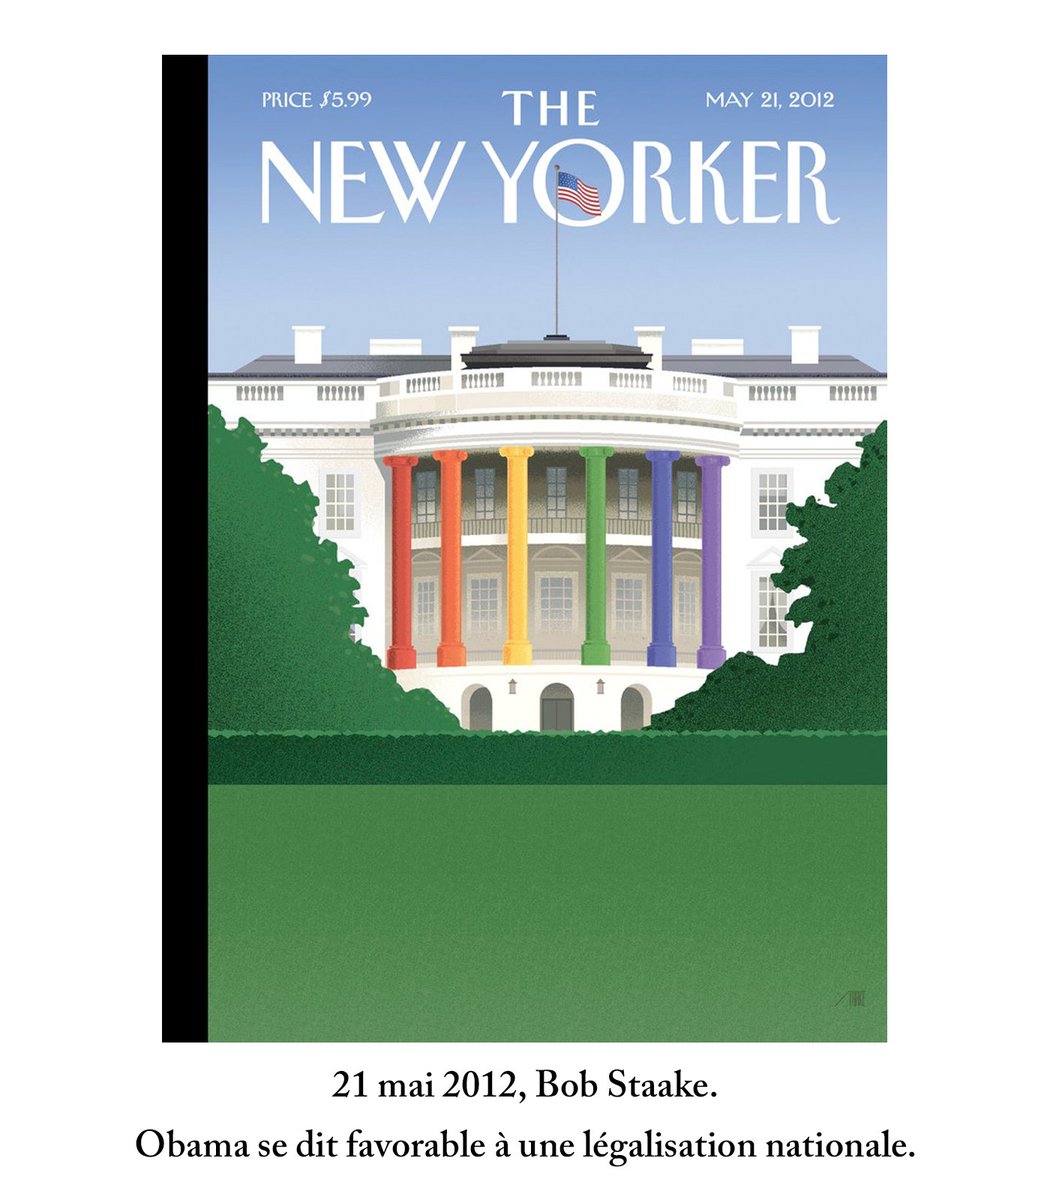 15 ans après, la situation a bien évolué.2011: le mariage gay légalisé à New York.2012: le président Obama se prononce en faveur d’une légalisation nationale.Les couvertures du New Yorker témoignent de ces avancées historiques.